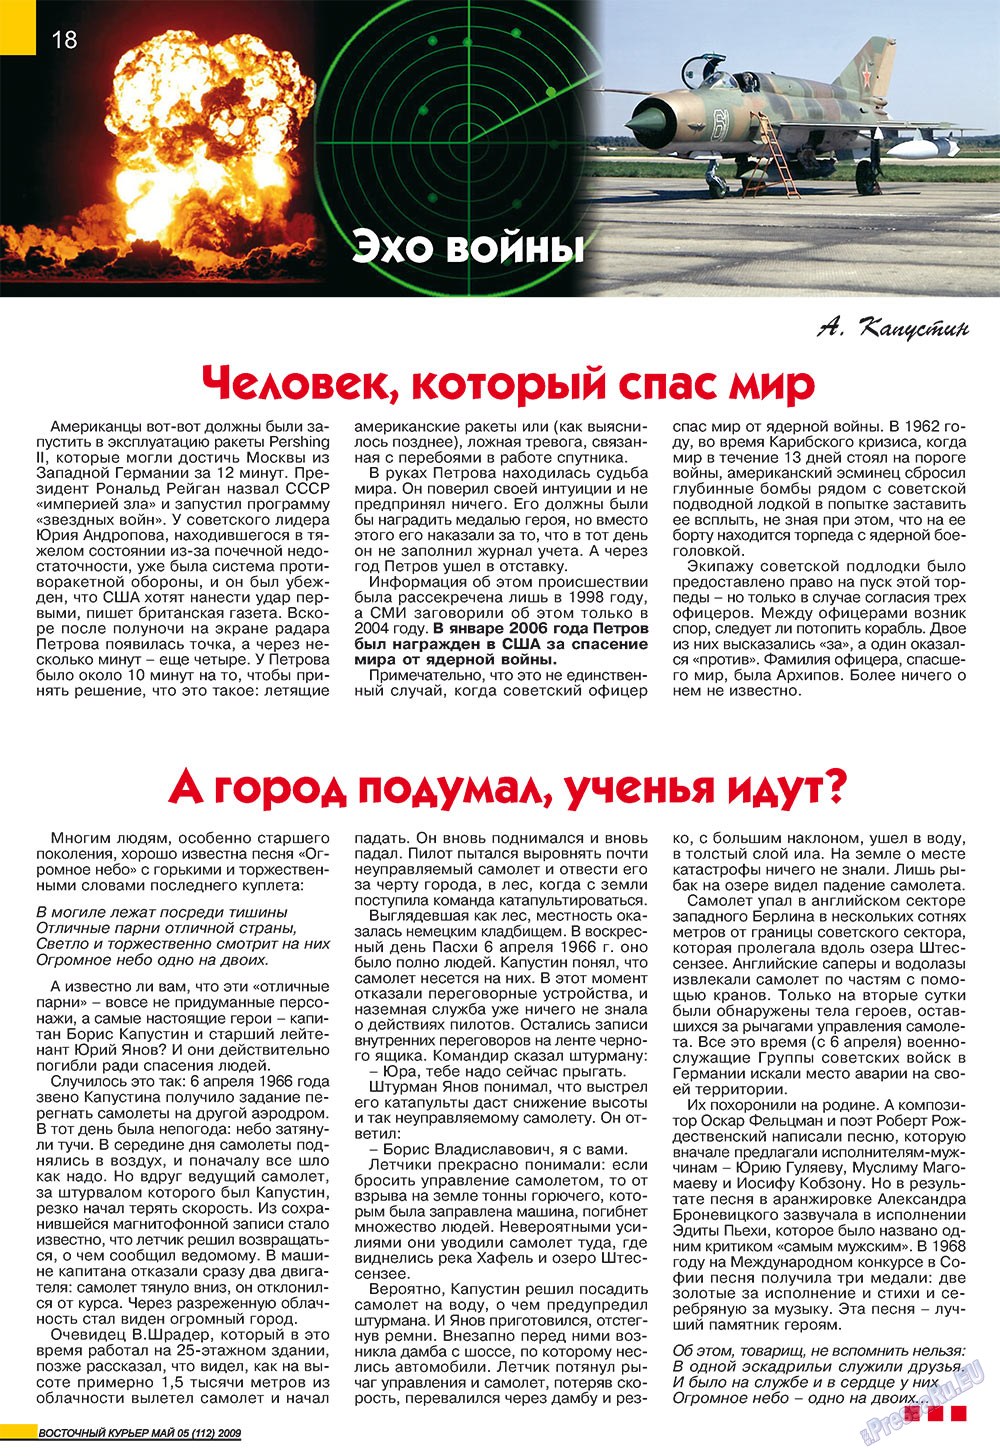 Восточный курьер, журнал. 2009 №5 стр.18